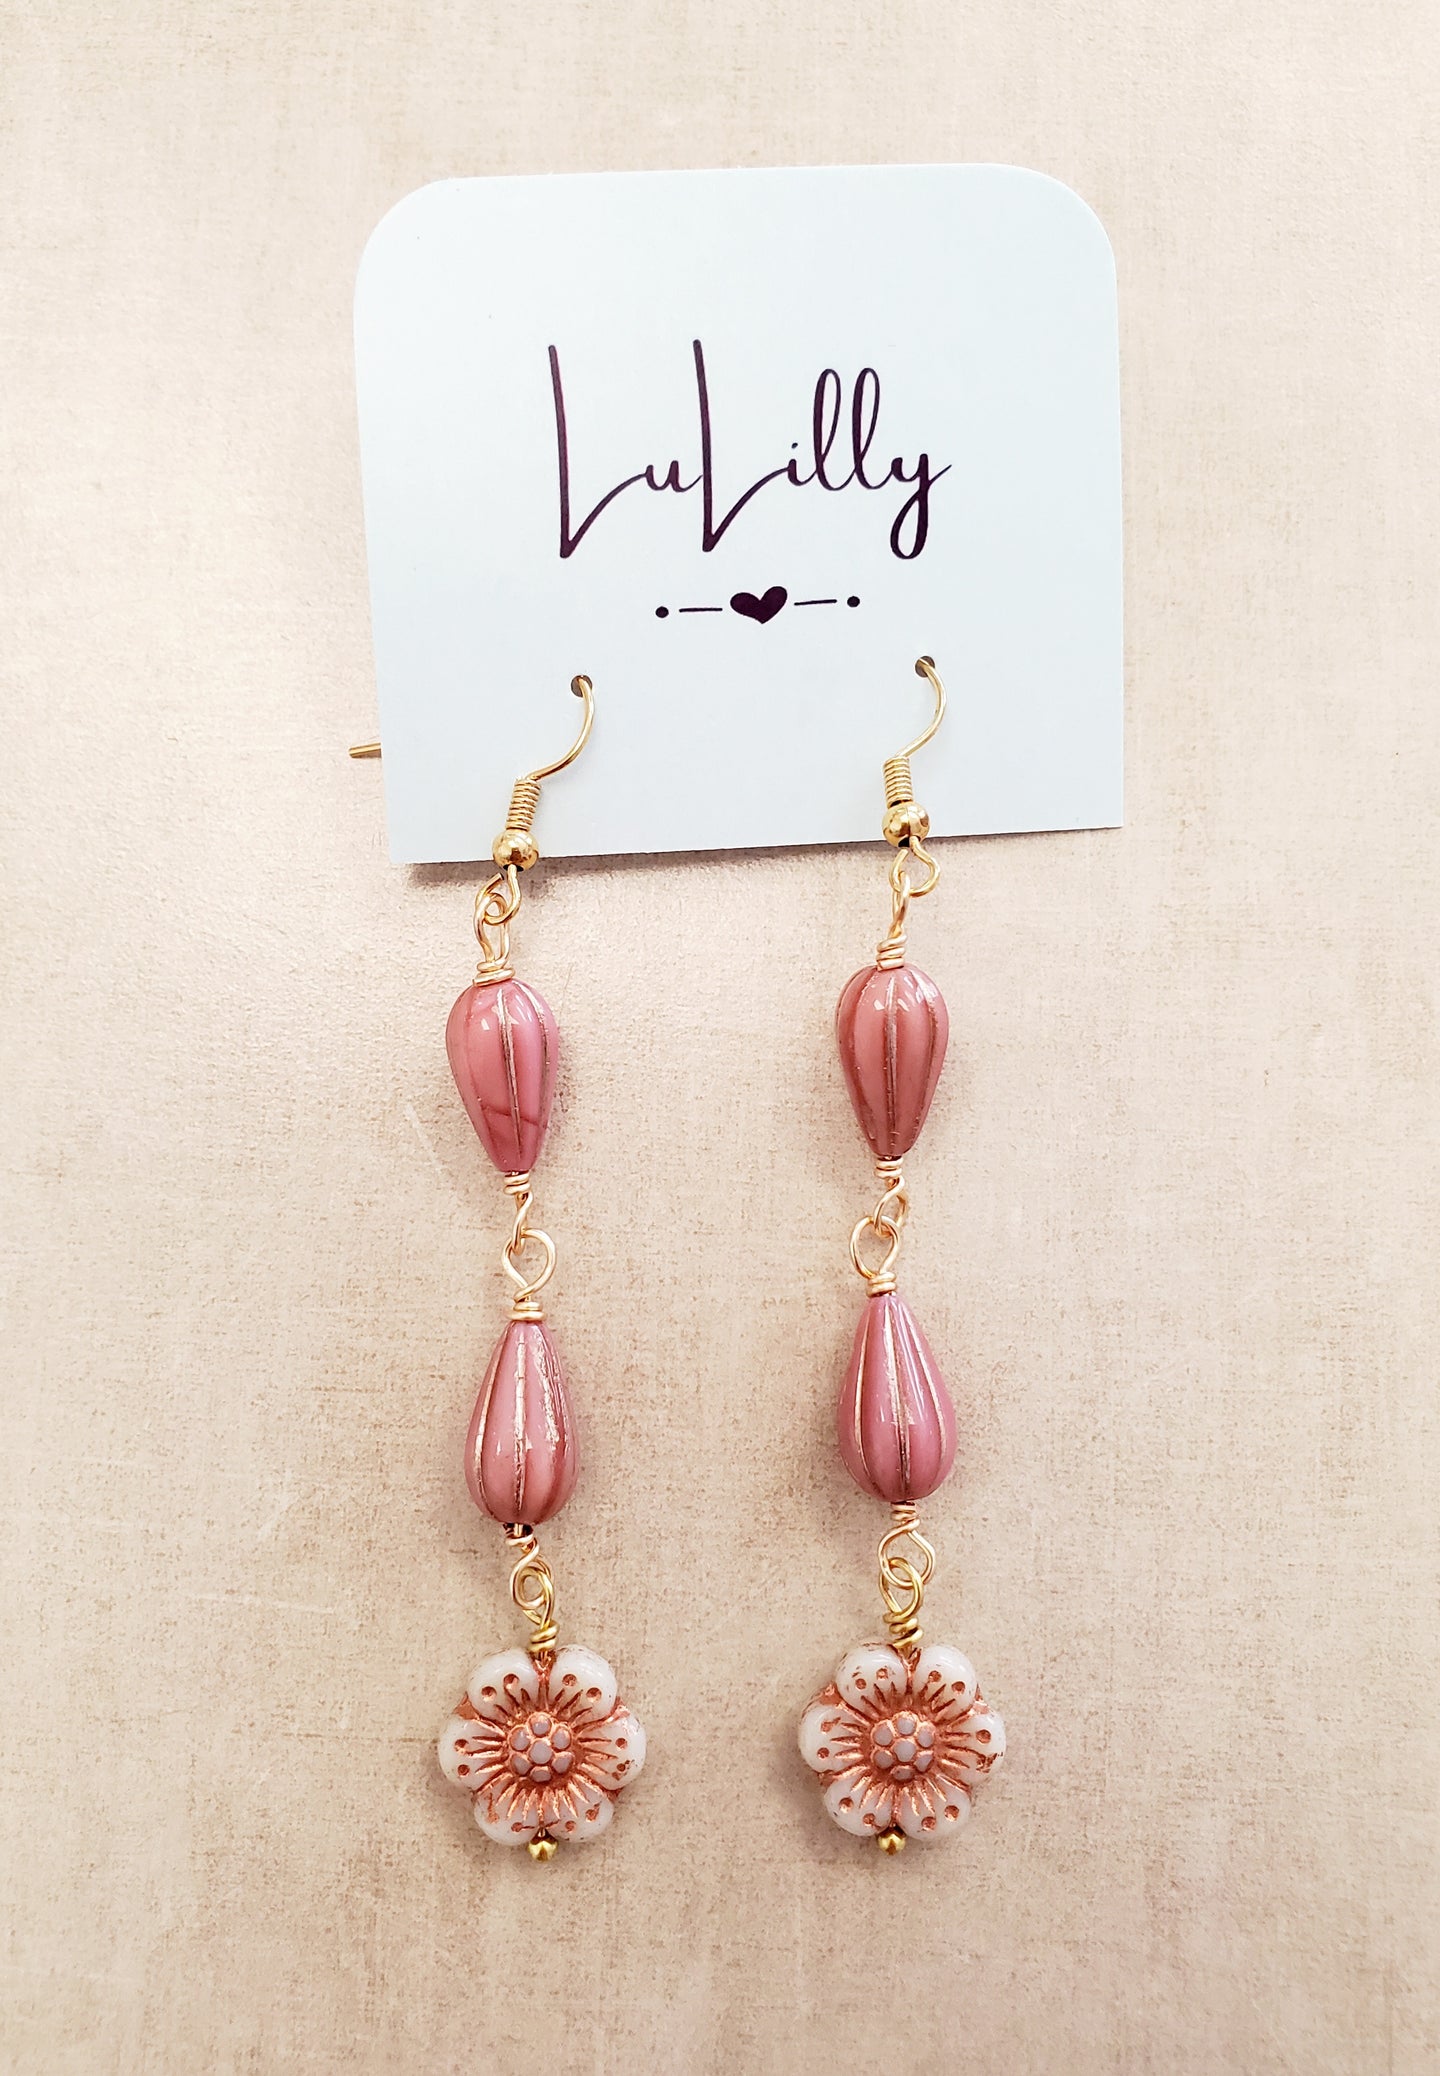 Pink Beaded Drop Floral Earrings